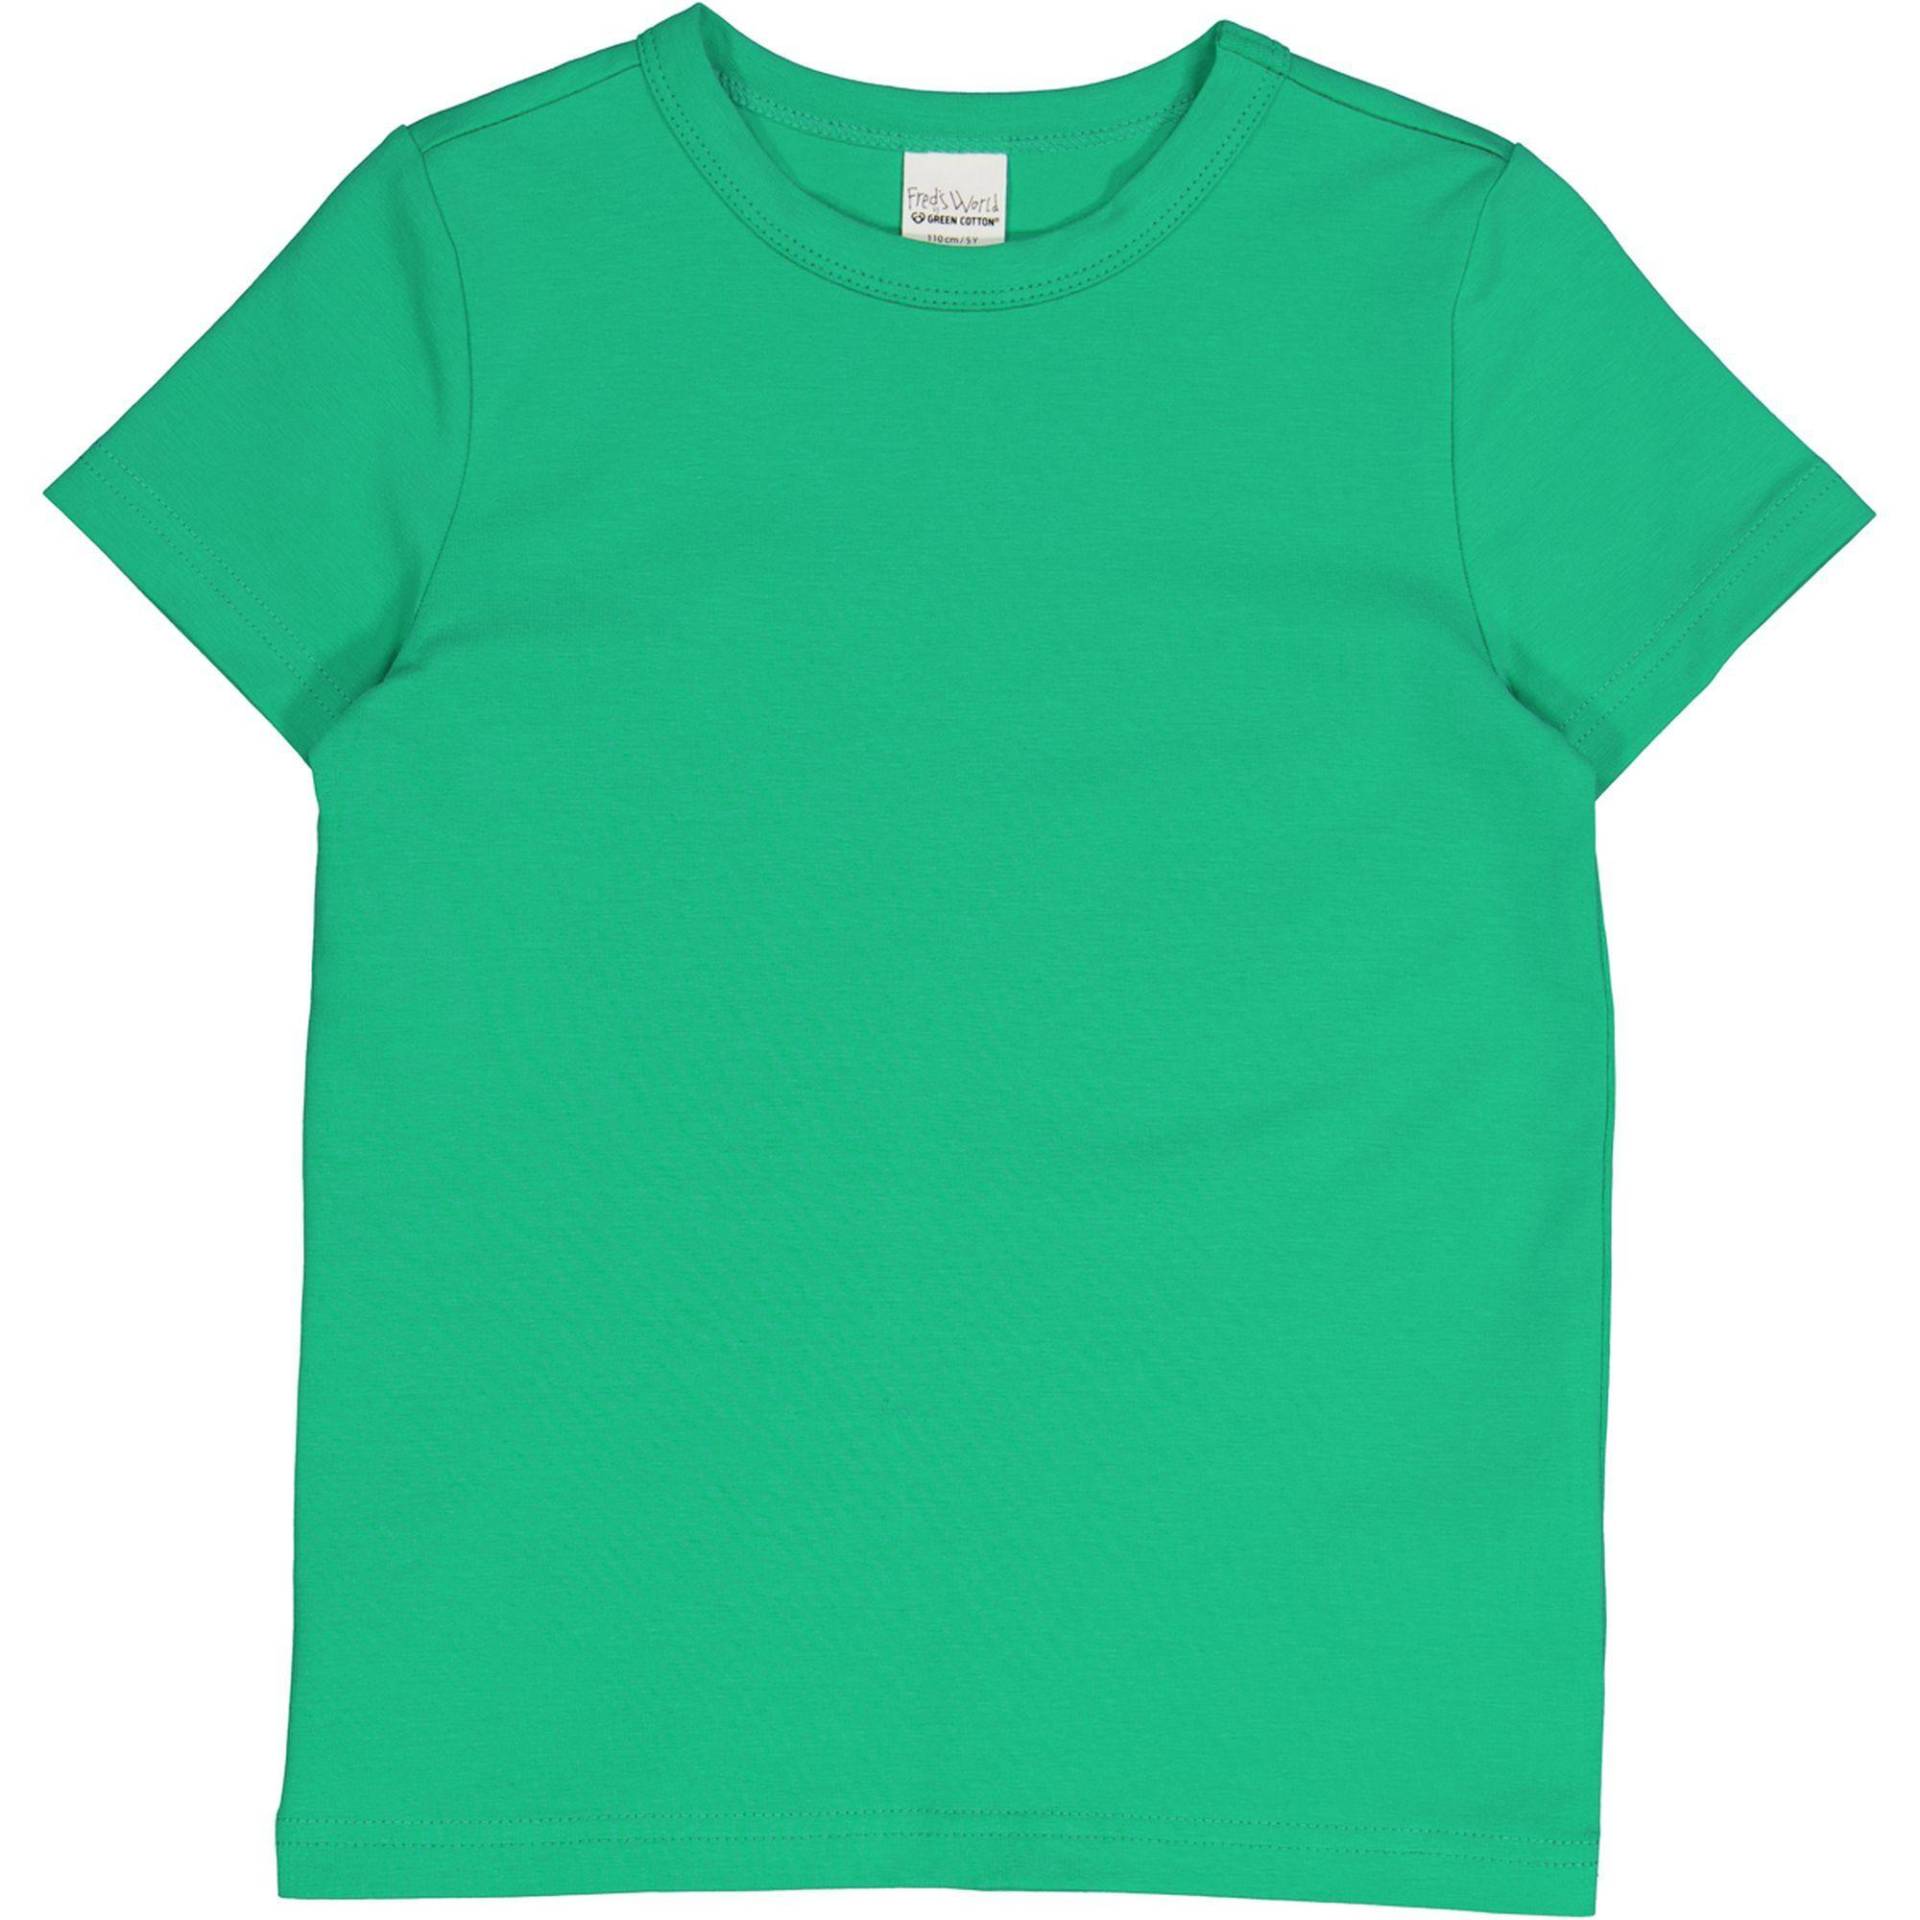 T-shirt Unisex  128 von Fred`s World by Green Cotton